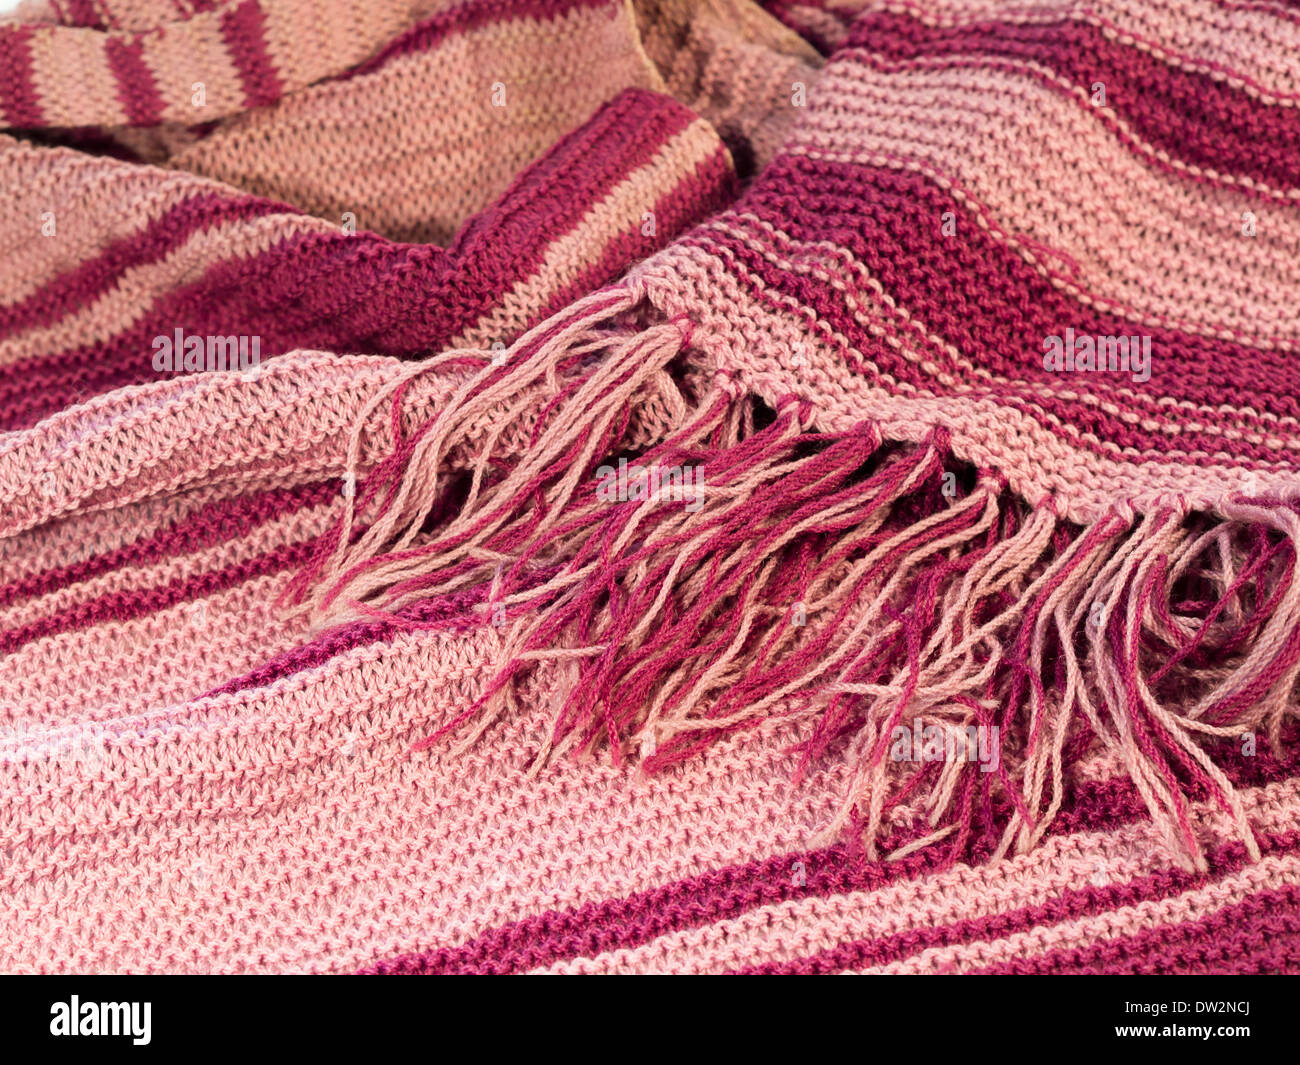 Gestreift rosa Wooly gestrickte Schal mit Rüschen, Nahaufnahme auf weiße,  warme Winter-Zubehör für die kalte Jahreszeit in Oslo Norwegen  Stockfotografie - Alamy